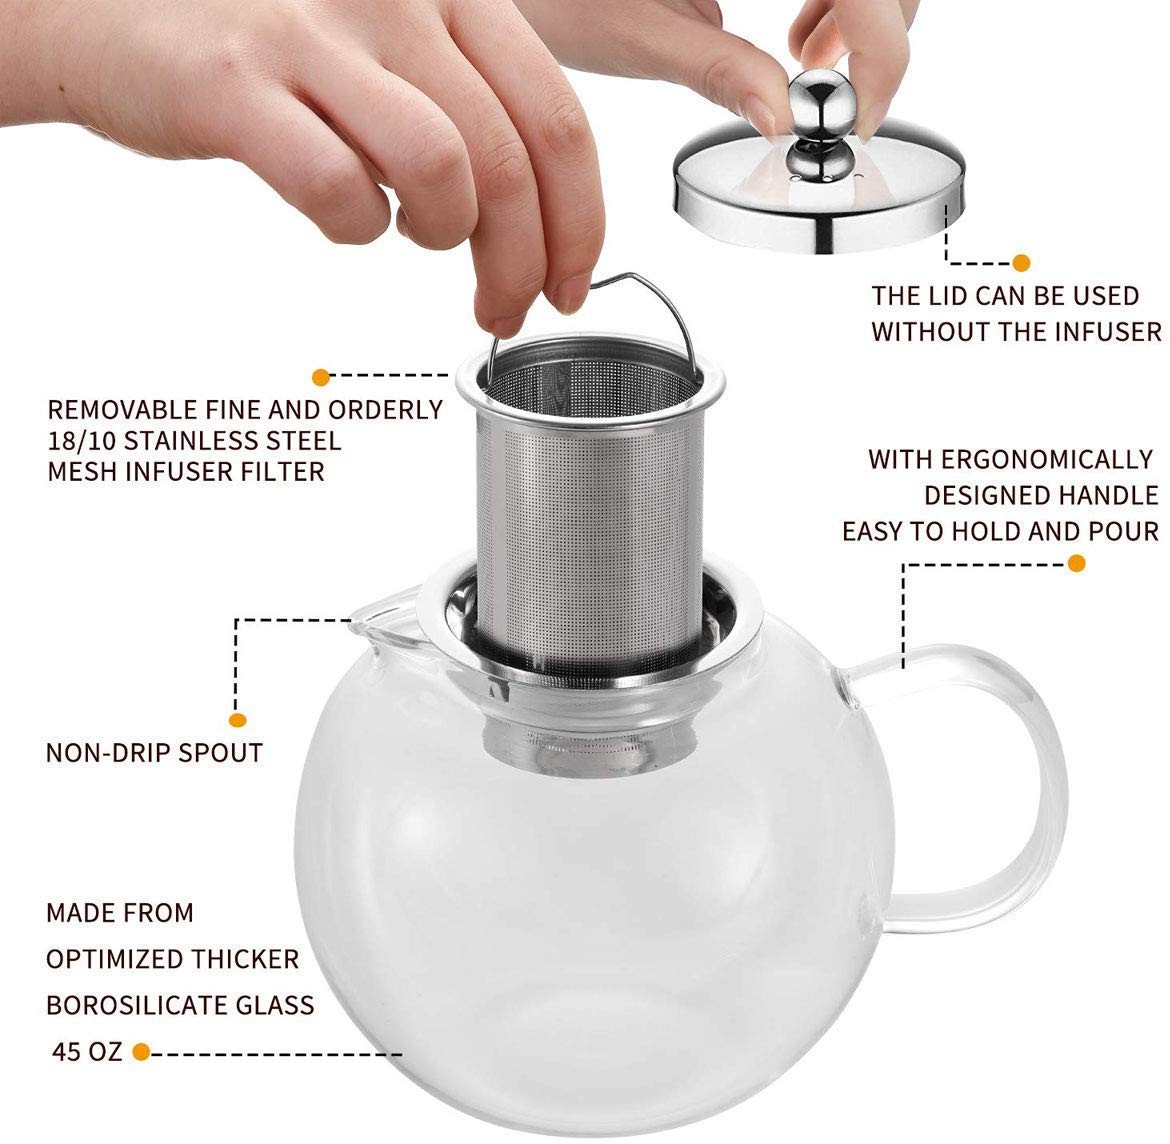 ガラスケトル ガラスティーポット ガラスポット 650ml 茶こし付 ガラス製急須 耐熱ガラス 直火OK Glass Teapot Tea  Kettle Stovetop Safel :1002253:akt8 - 通販 - Yahoo!ショッピング